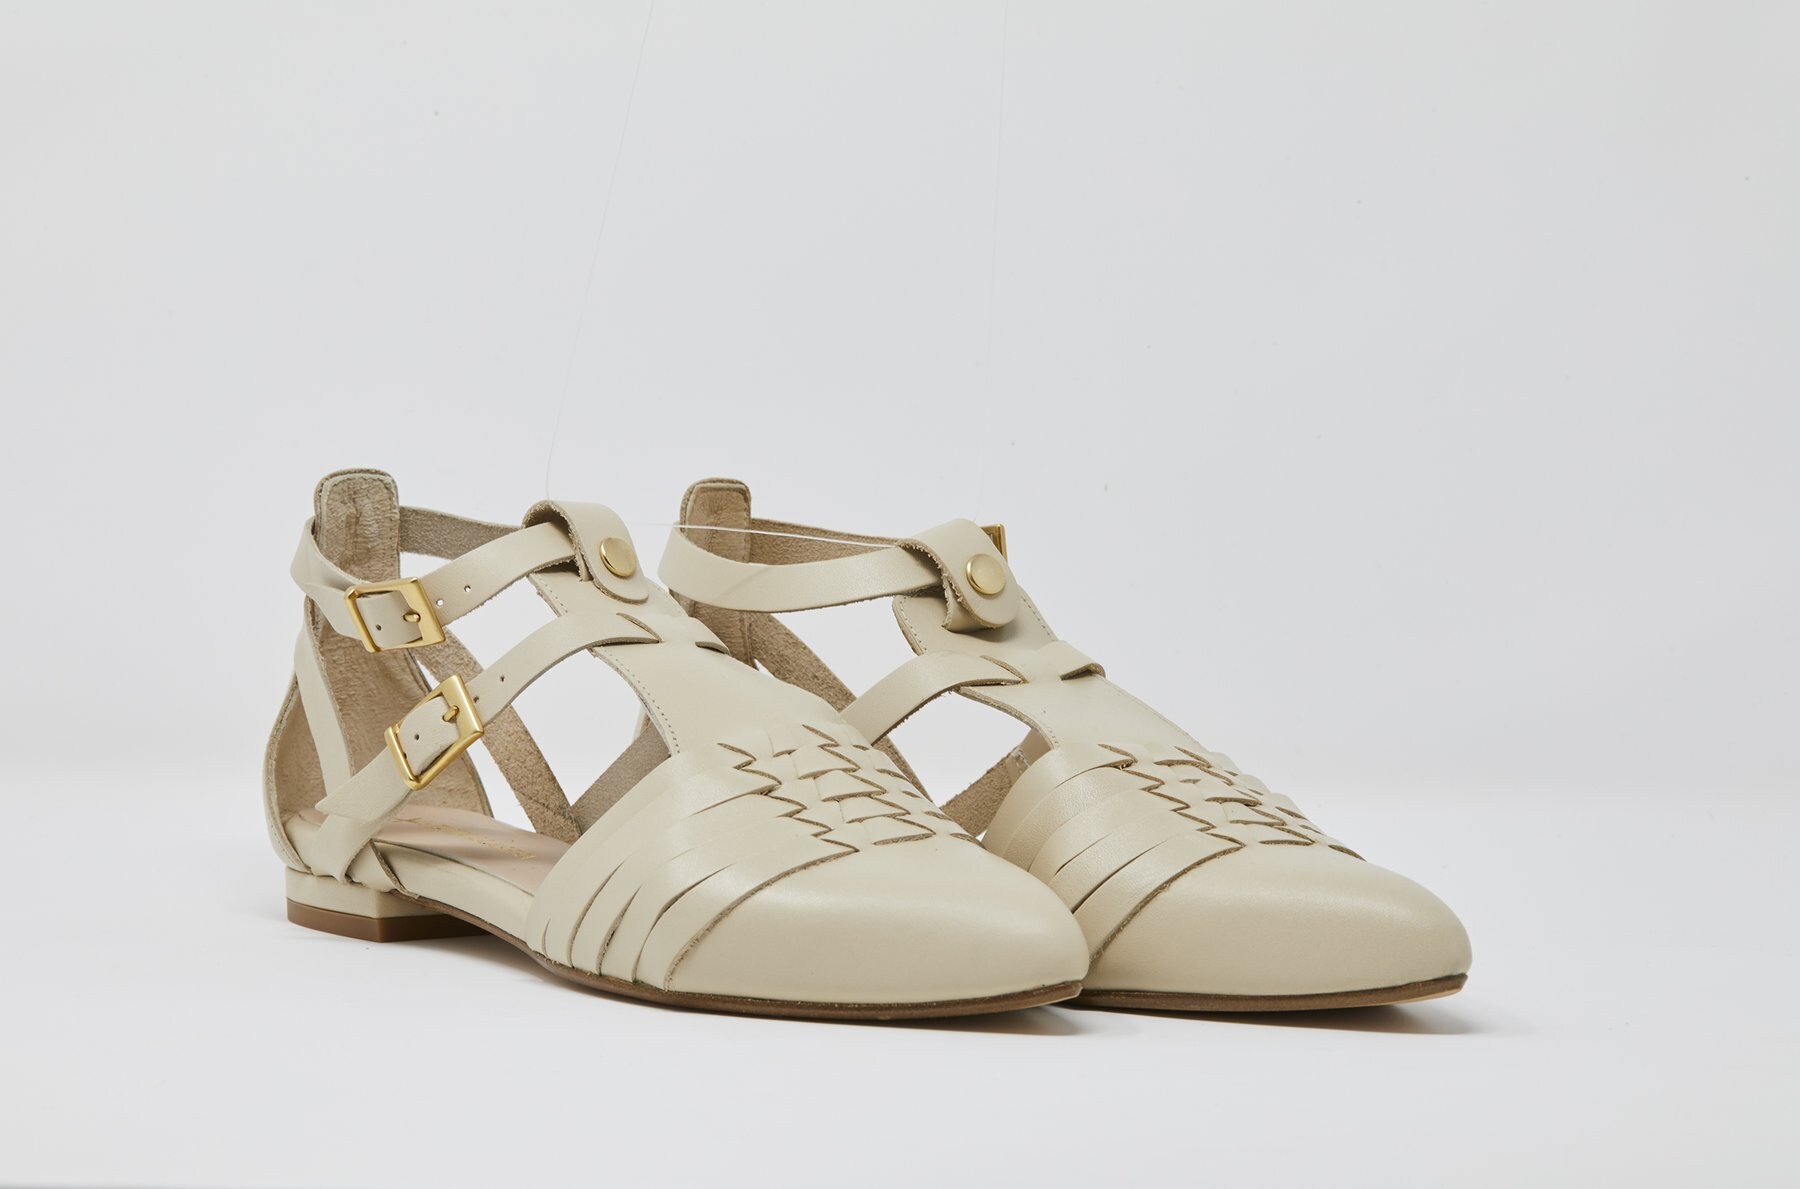 La comunicadora ha lanzado unas sandalias junto a la firma española de calzado 5yMedio, que han recibido numerosas criticas por su precio